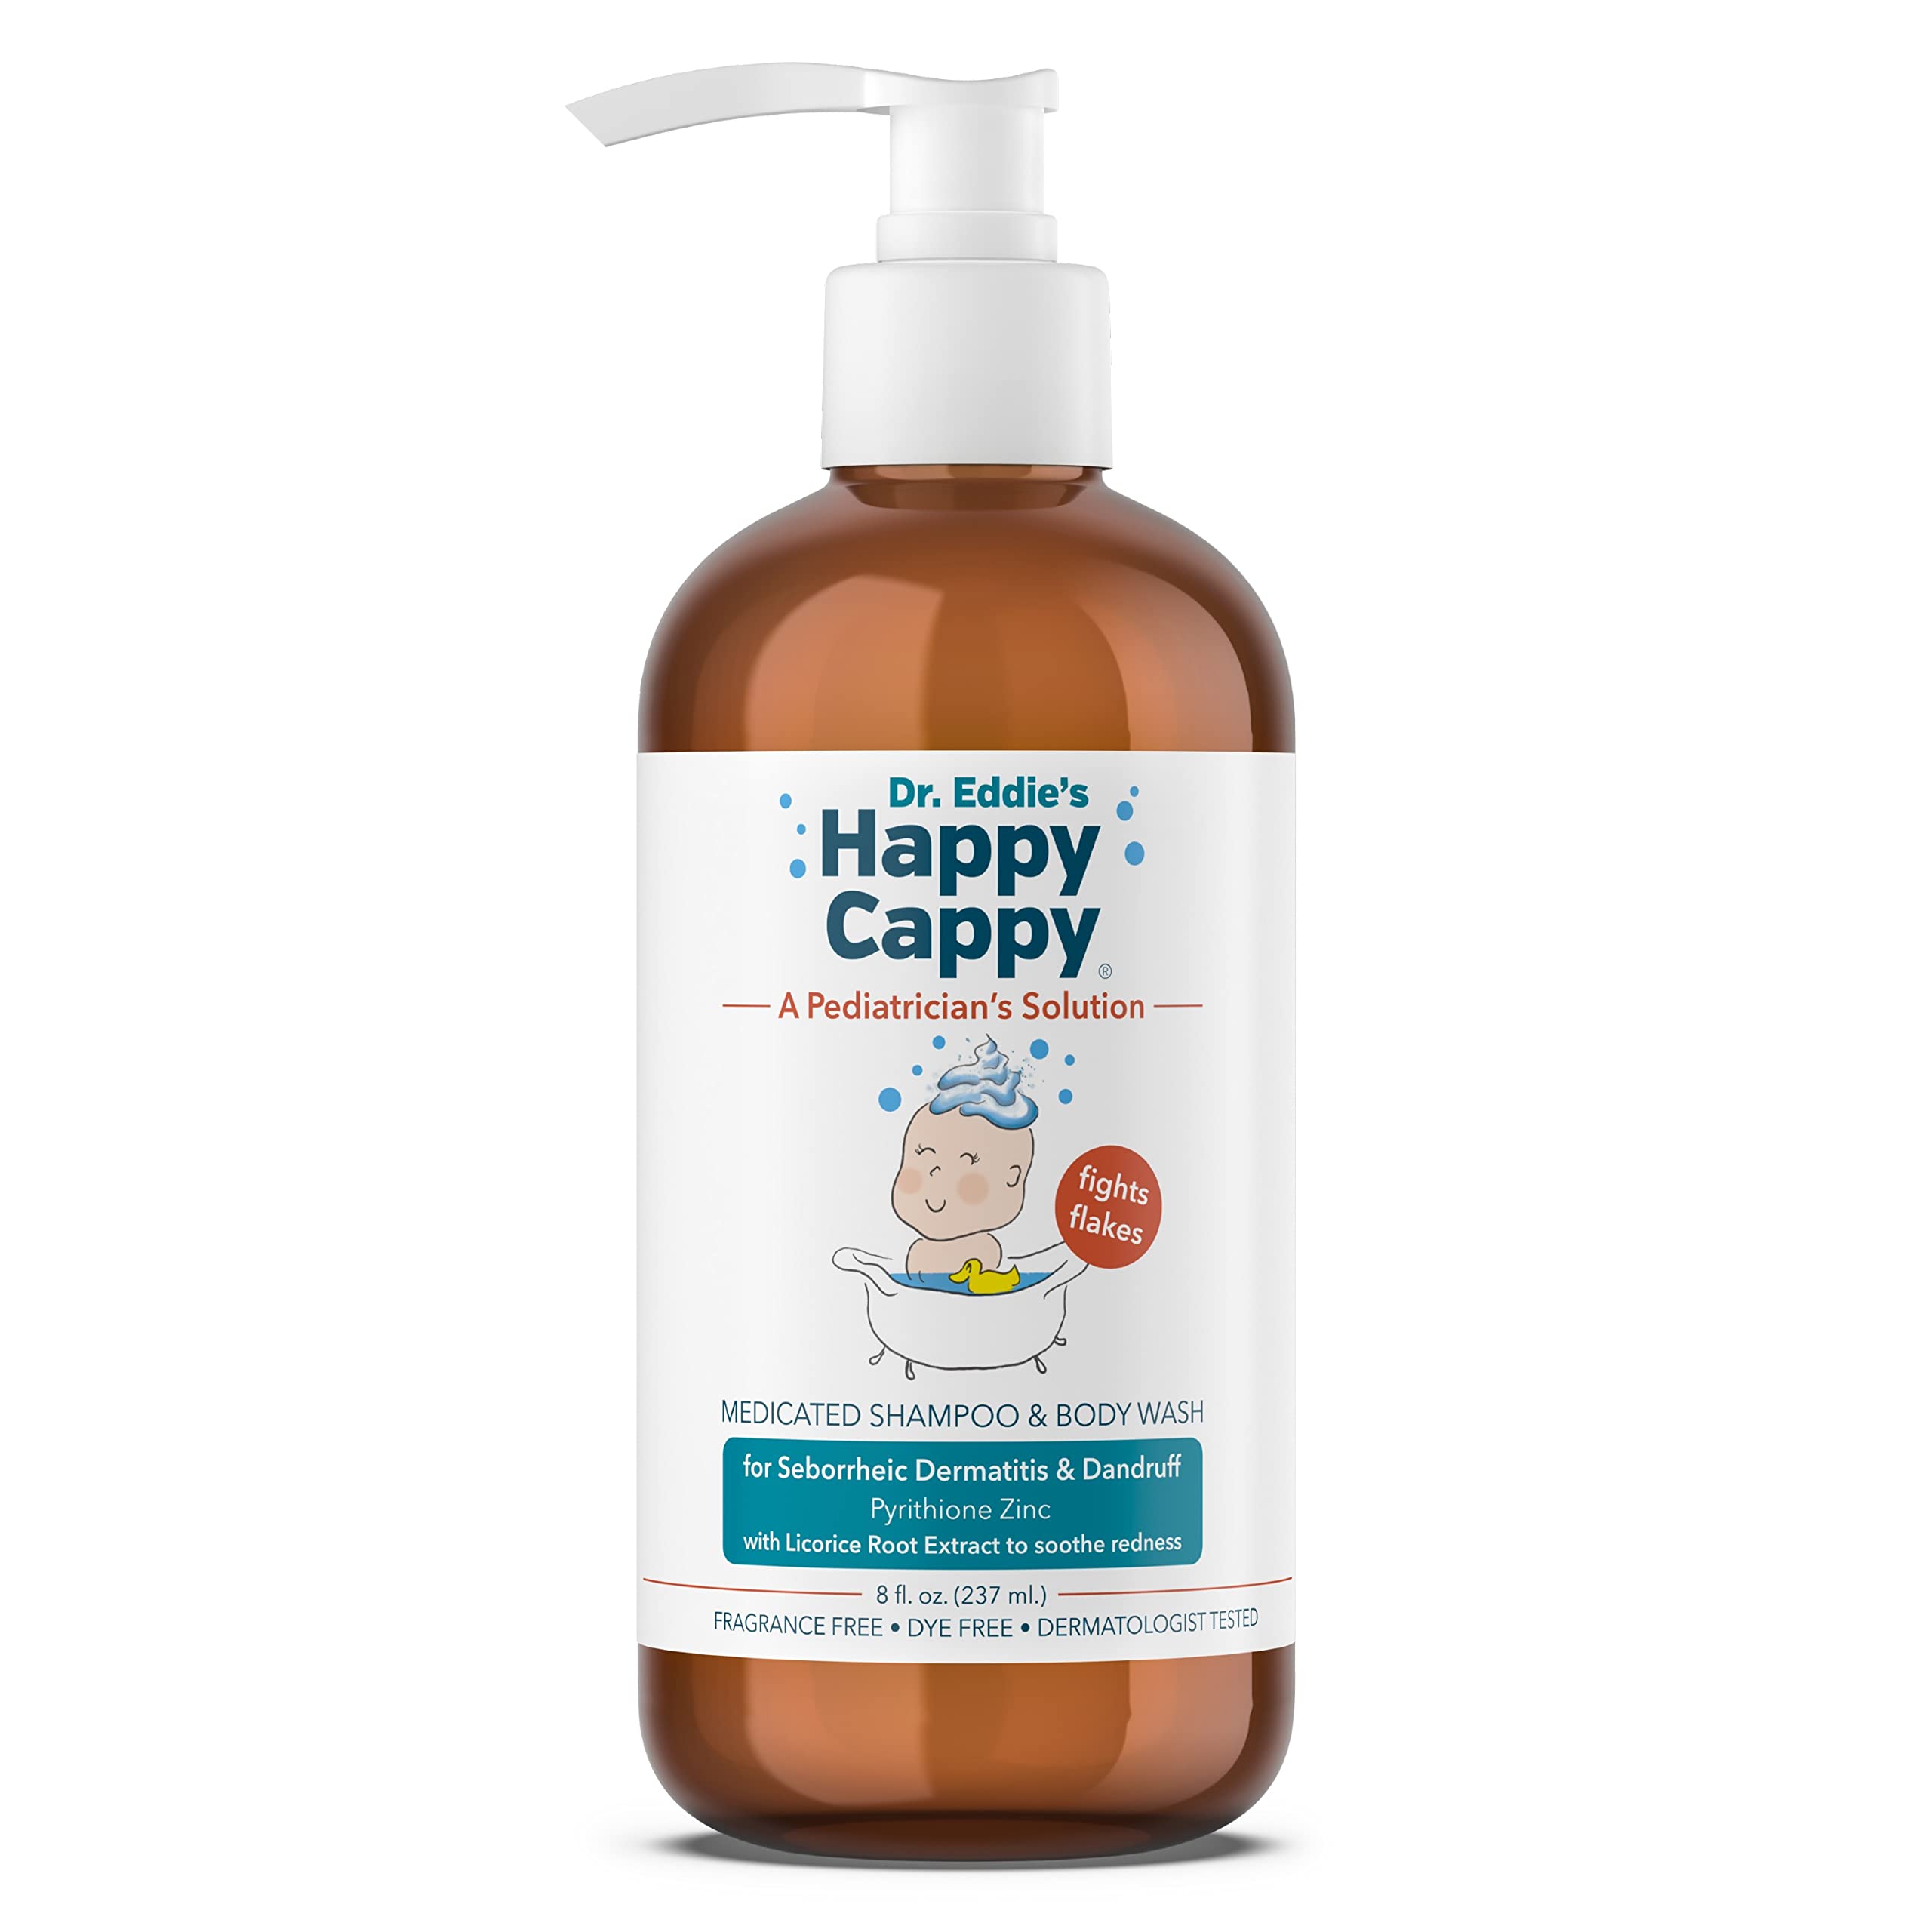 Dr. Eddie's Happy Cappy, Medicated Shampoo & Body Wash for Seborrheic Dermatitis & Dandruff, 8 fl oz - image 1 of 7